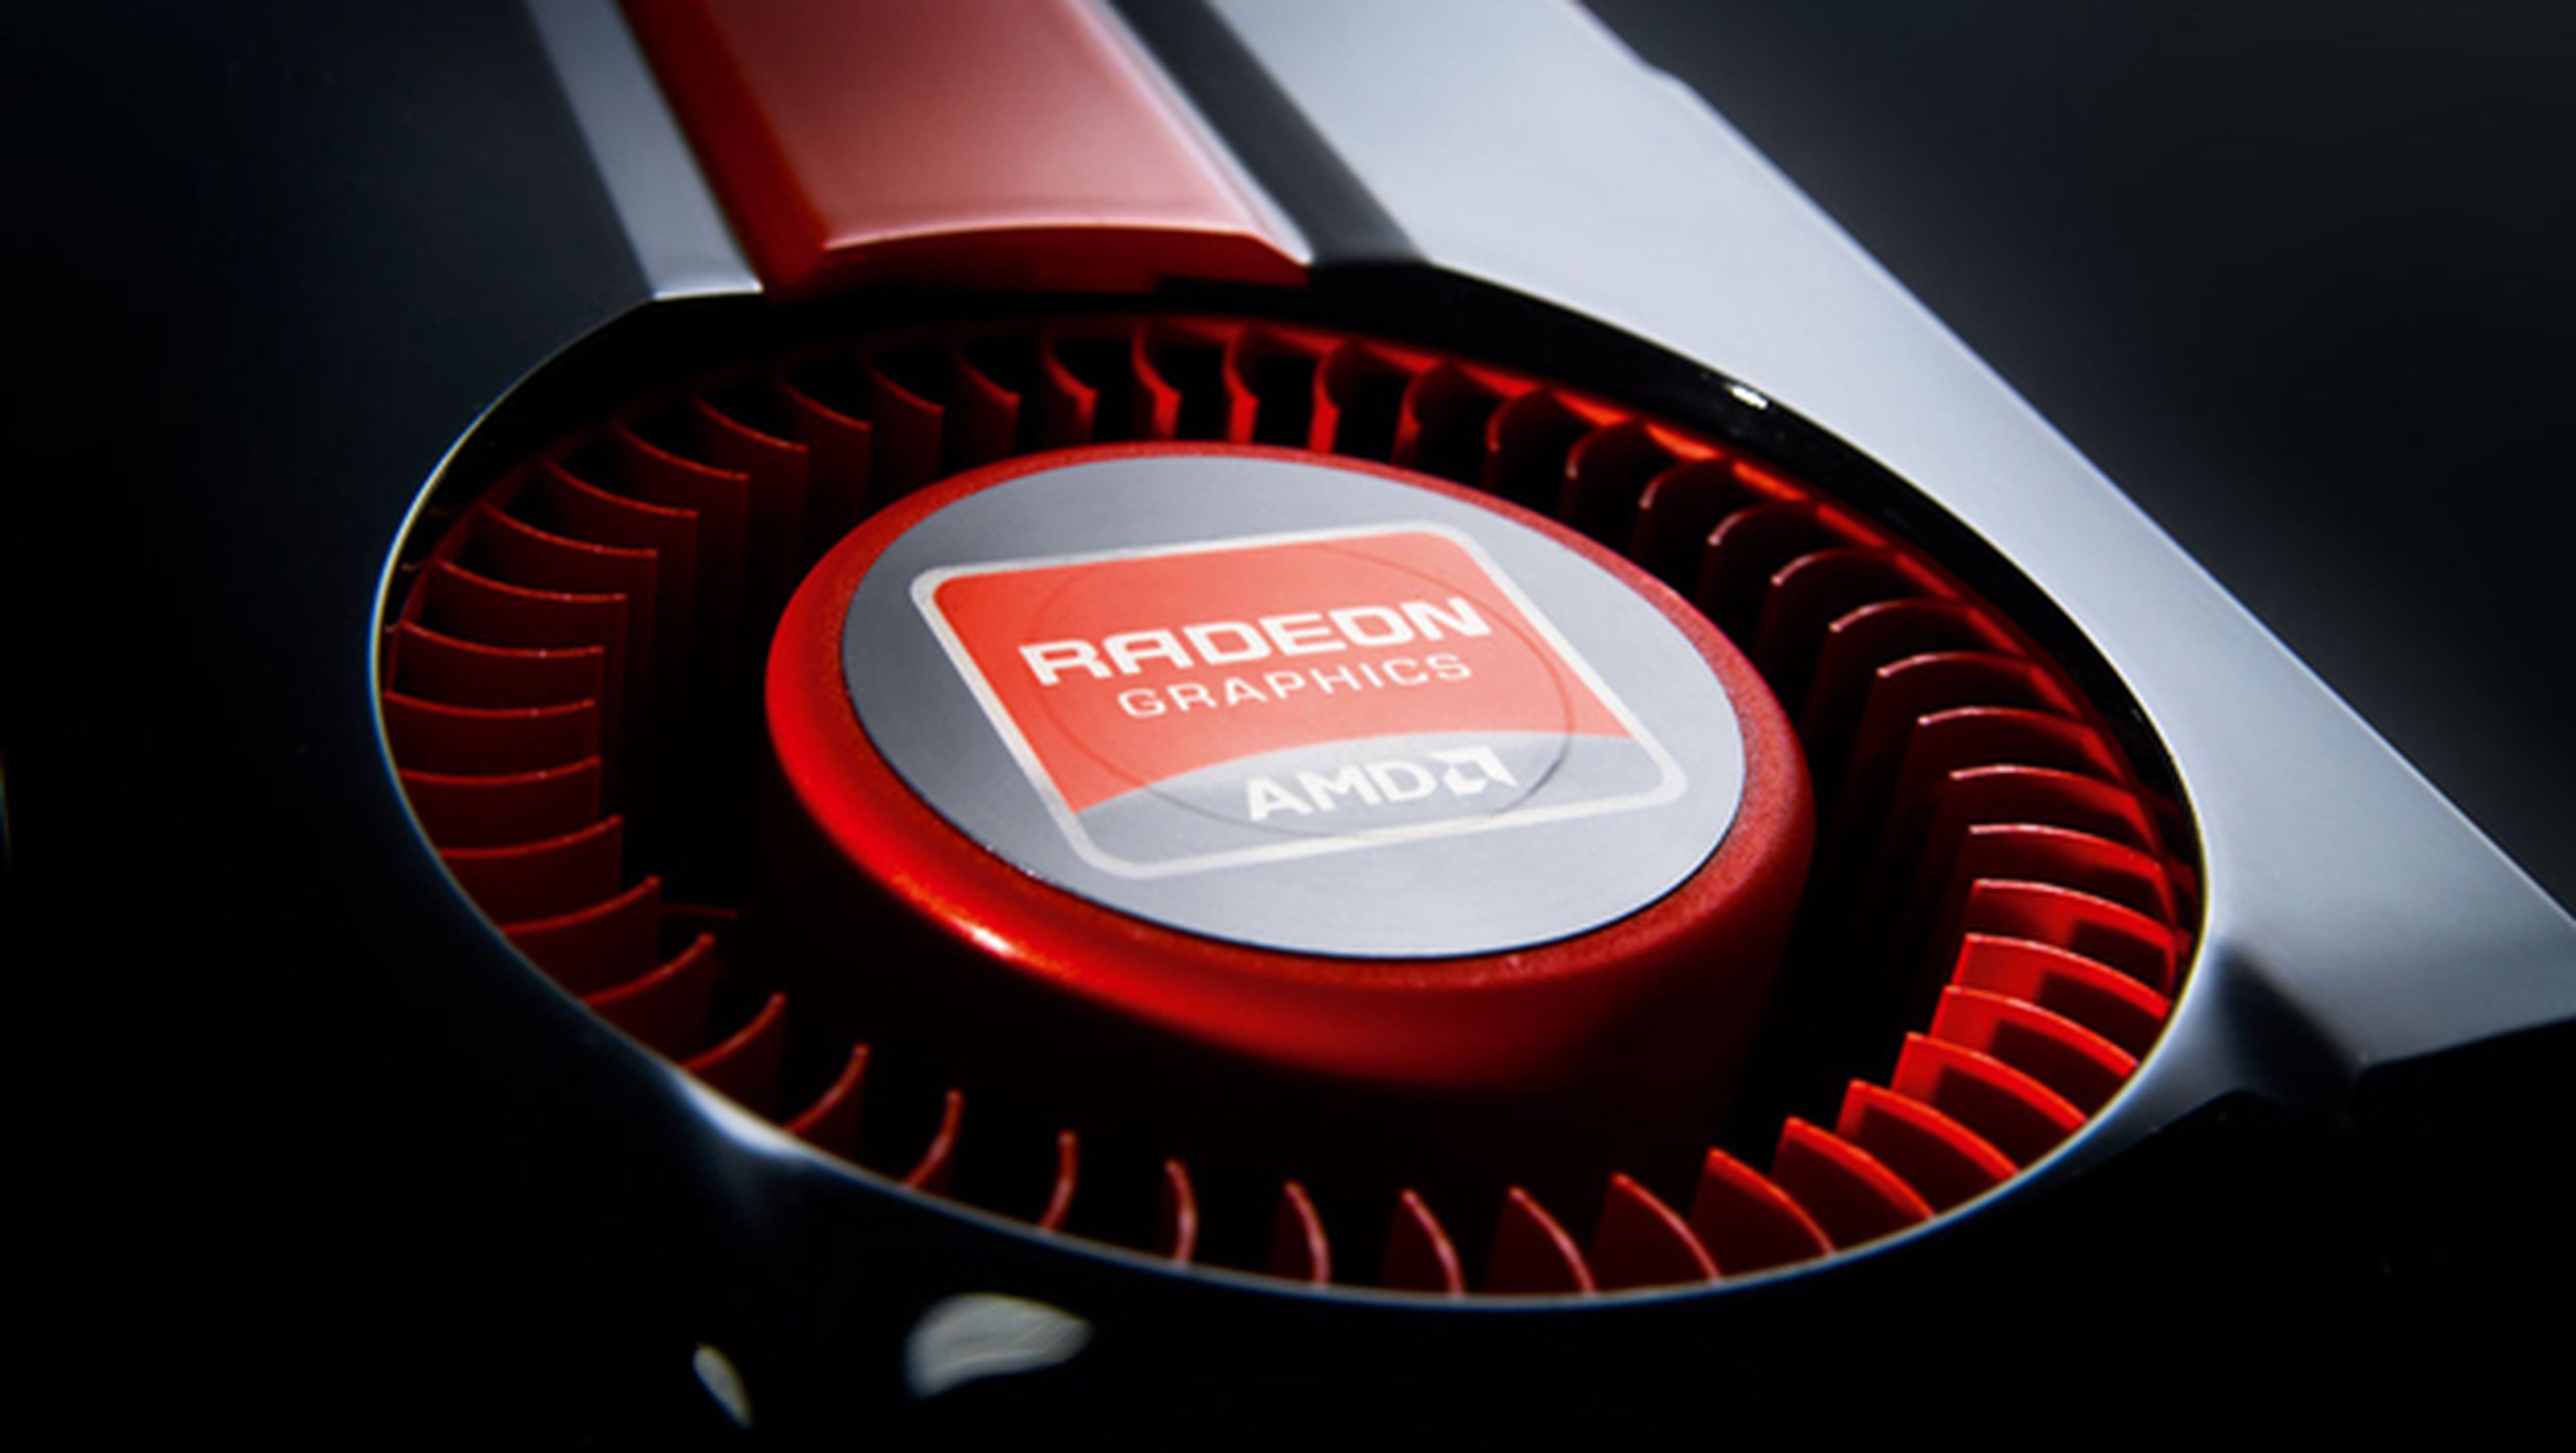 Aparece la AMD RX 490, nueva gráfica pensada para jugar a 4K